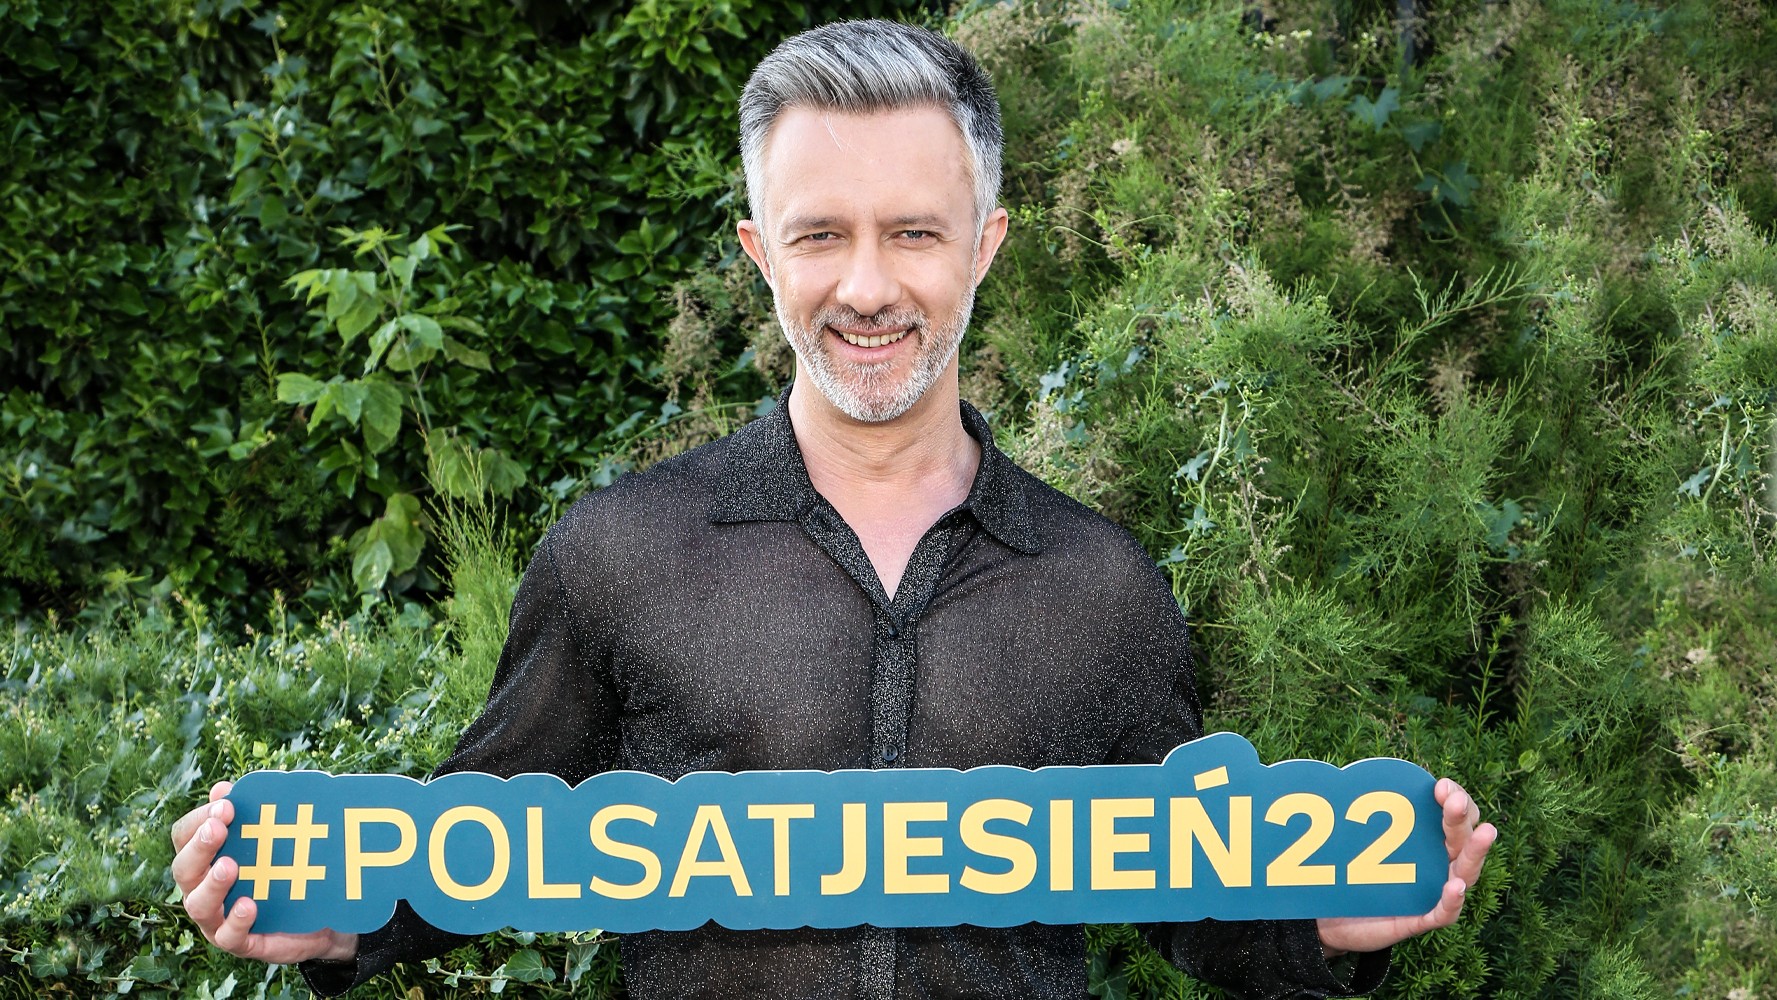 Łukasz Płoszajski: Taniec, Pierwsza miłość i podróże - Polsat.pl